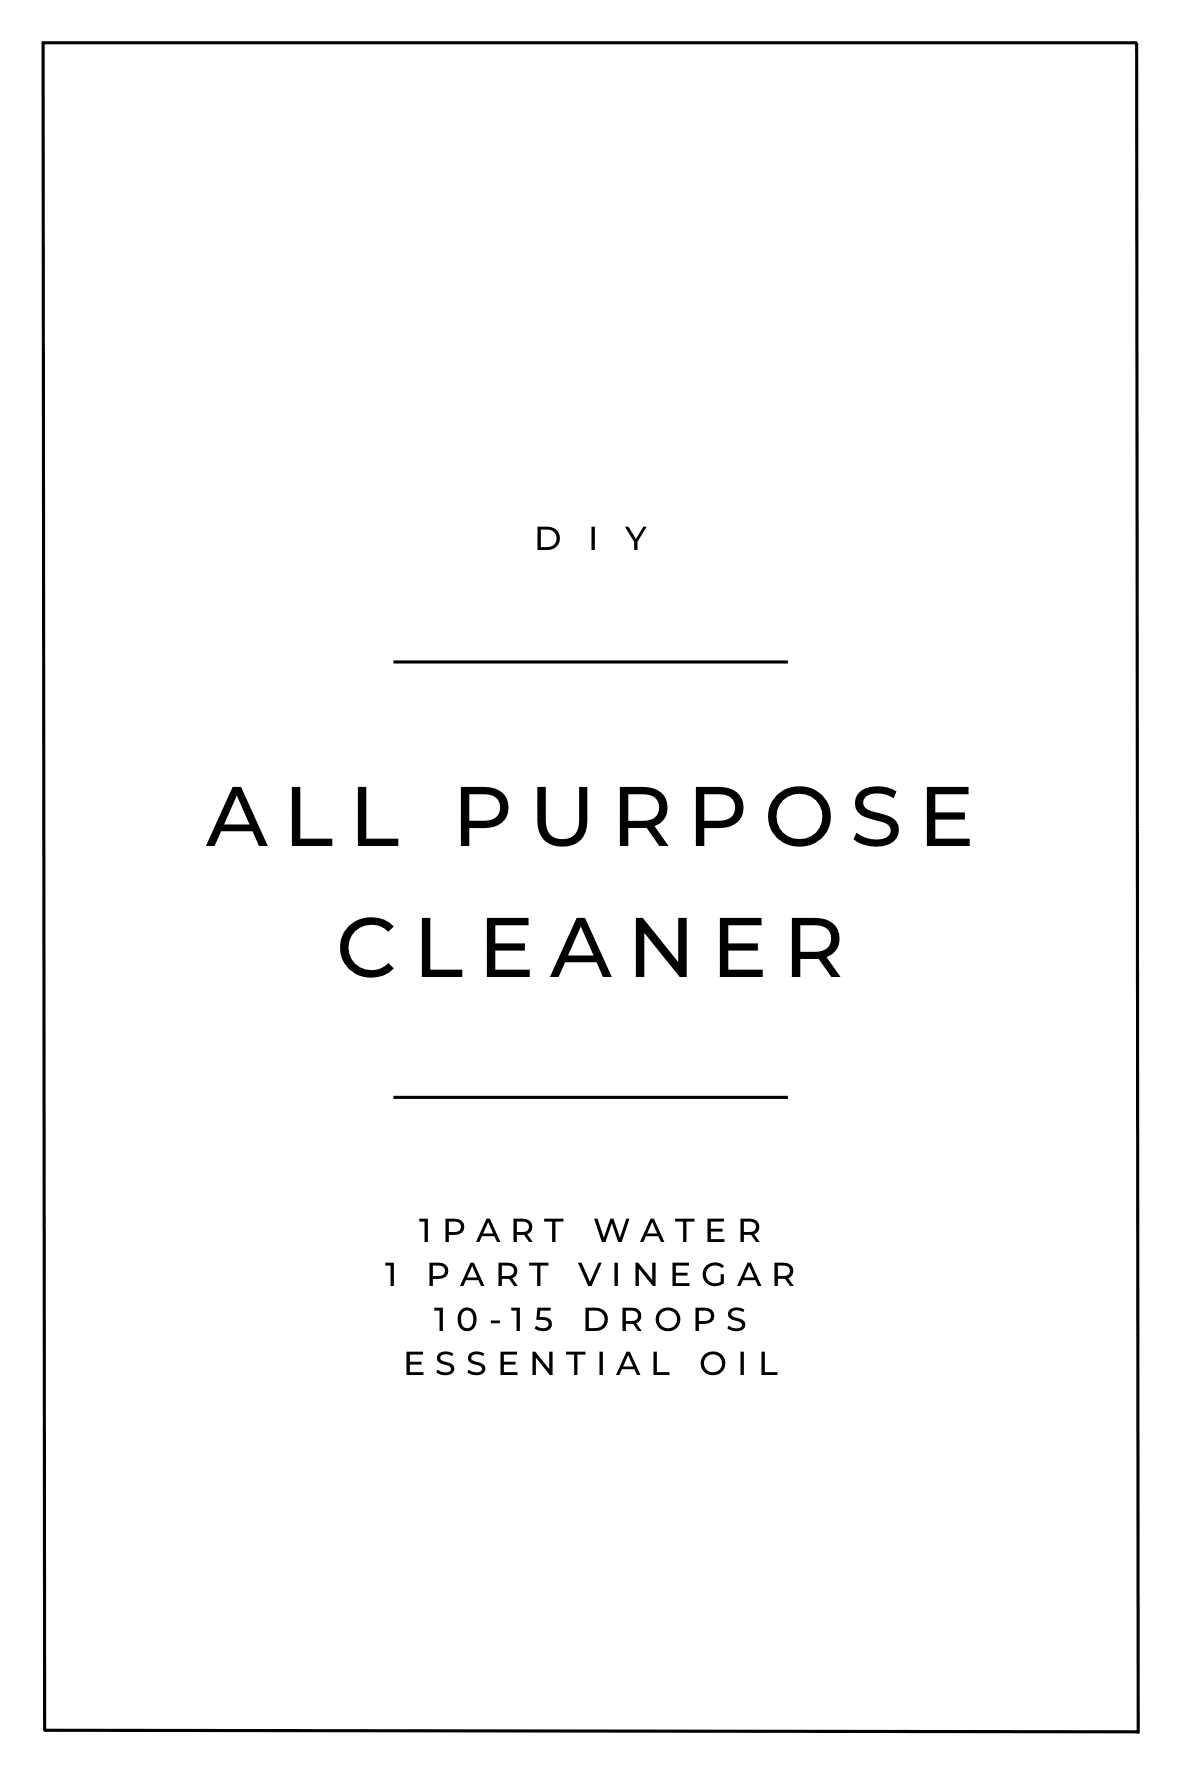 All purpose cleaner recipe